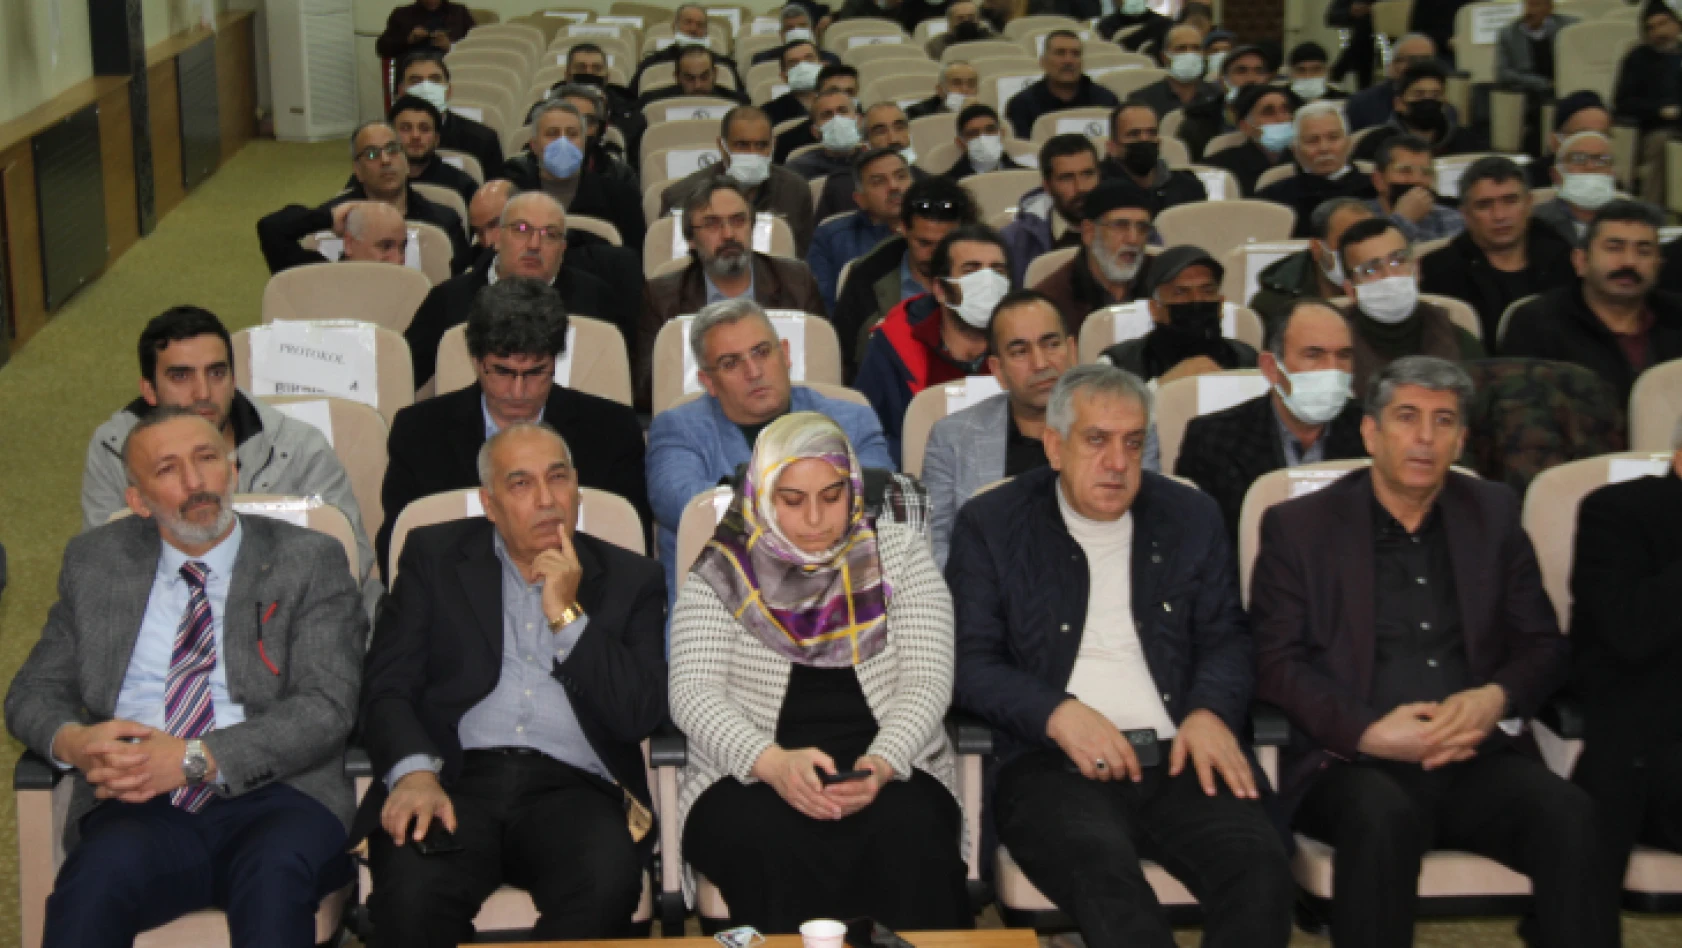 Elazığ'da '1. Geven Balı Çalıştayı' gerçekleştirildi